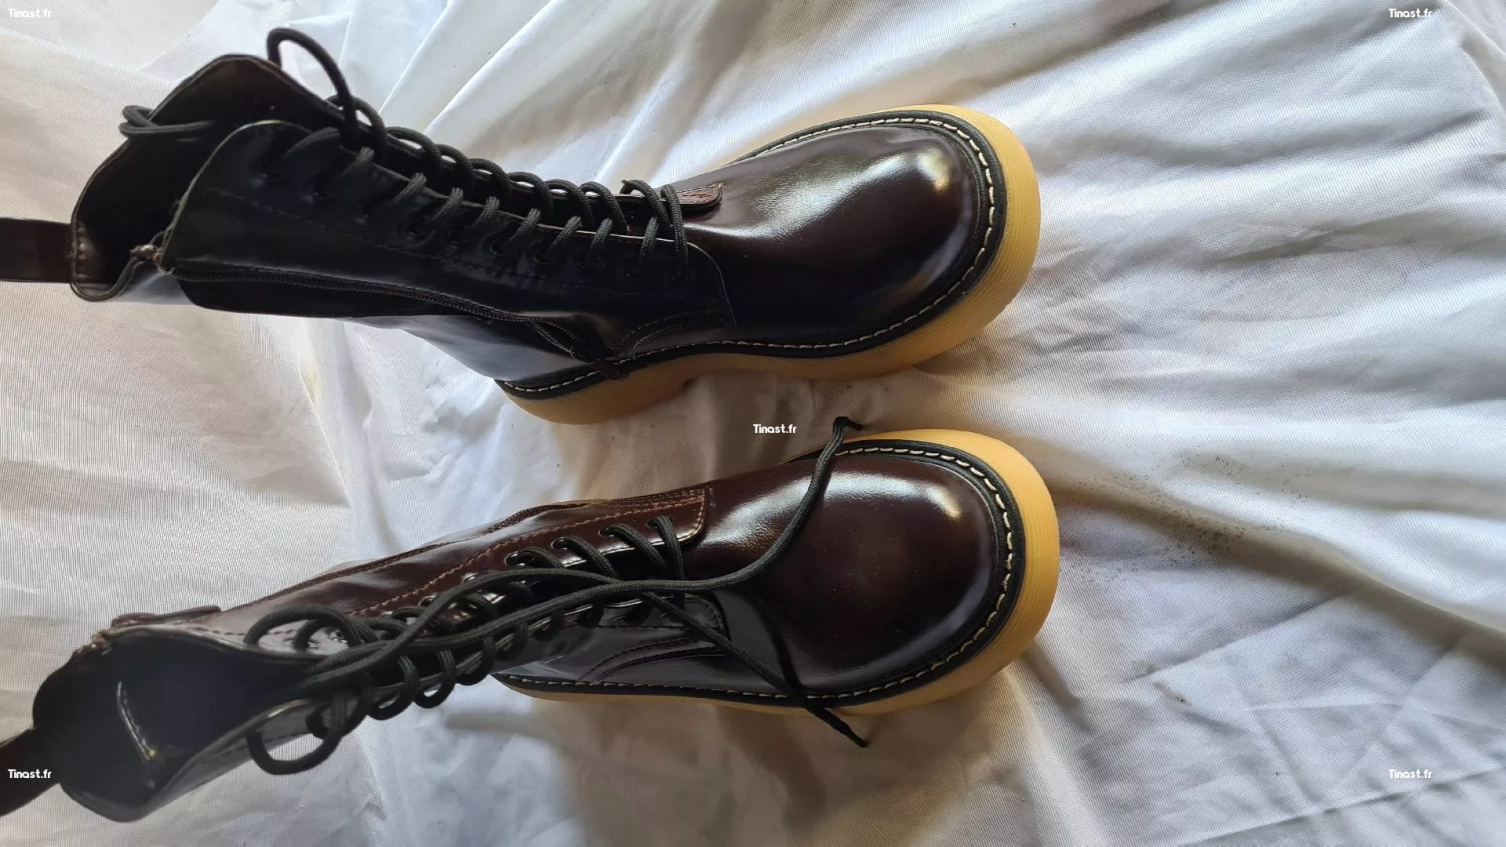 boots noire